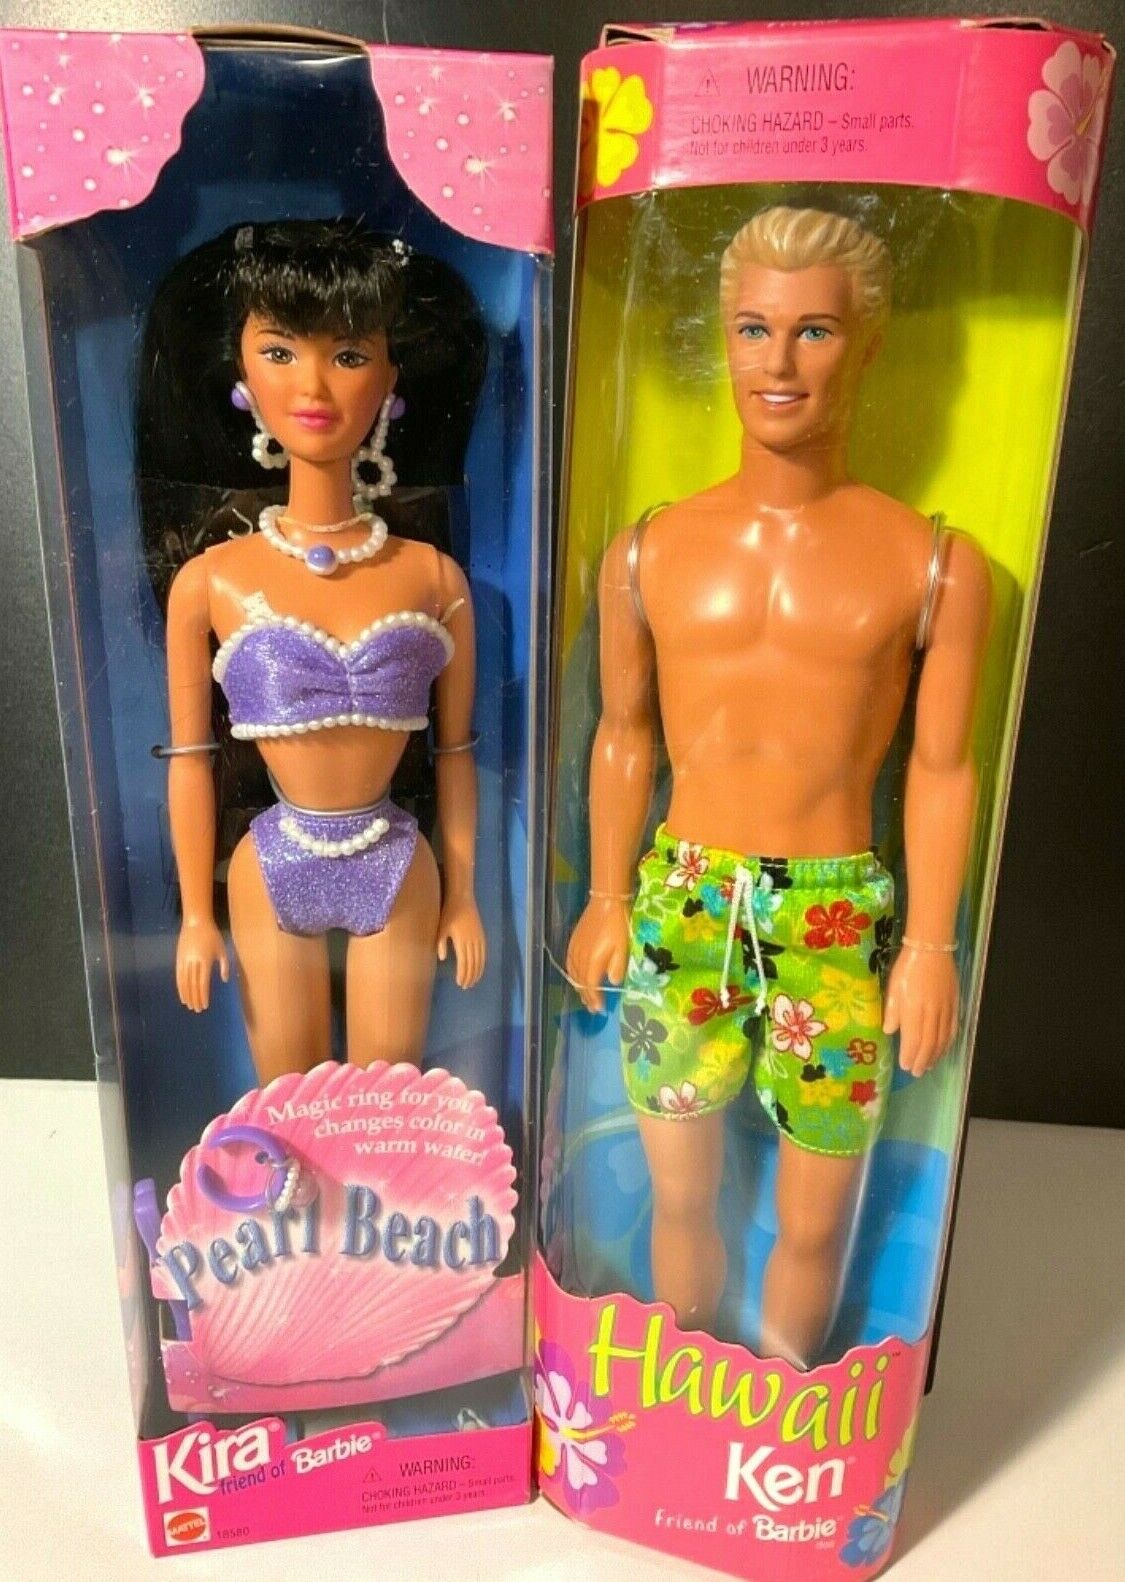 Vintage Lot of 2 Mattel Barbie 1997 Kira Pearl Beach & 1999 Hawaii Ken NIB Mattel 24616, 18580 - фотография #2